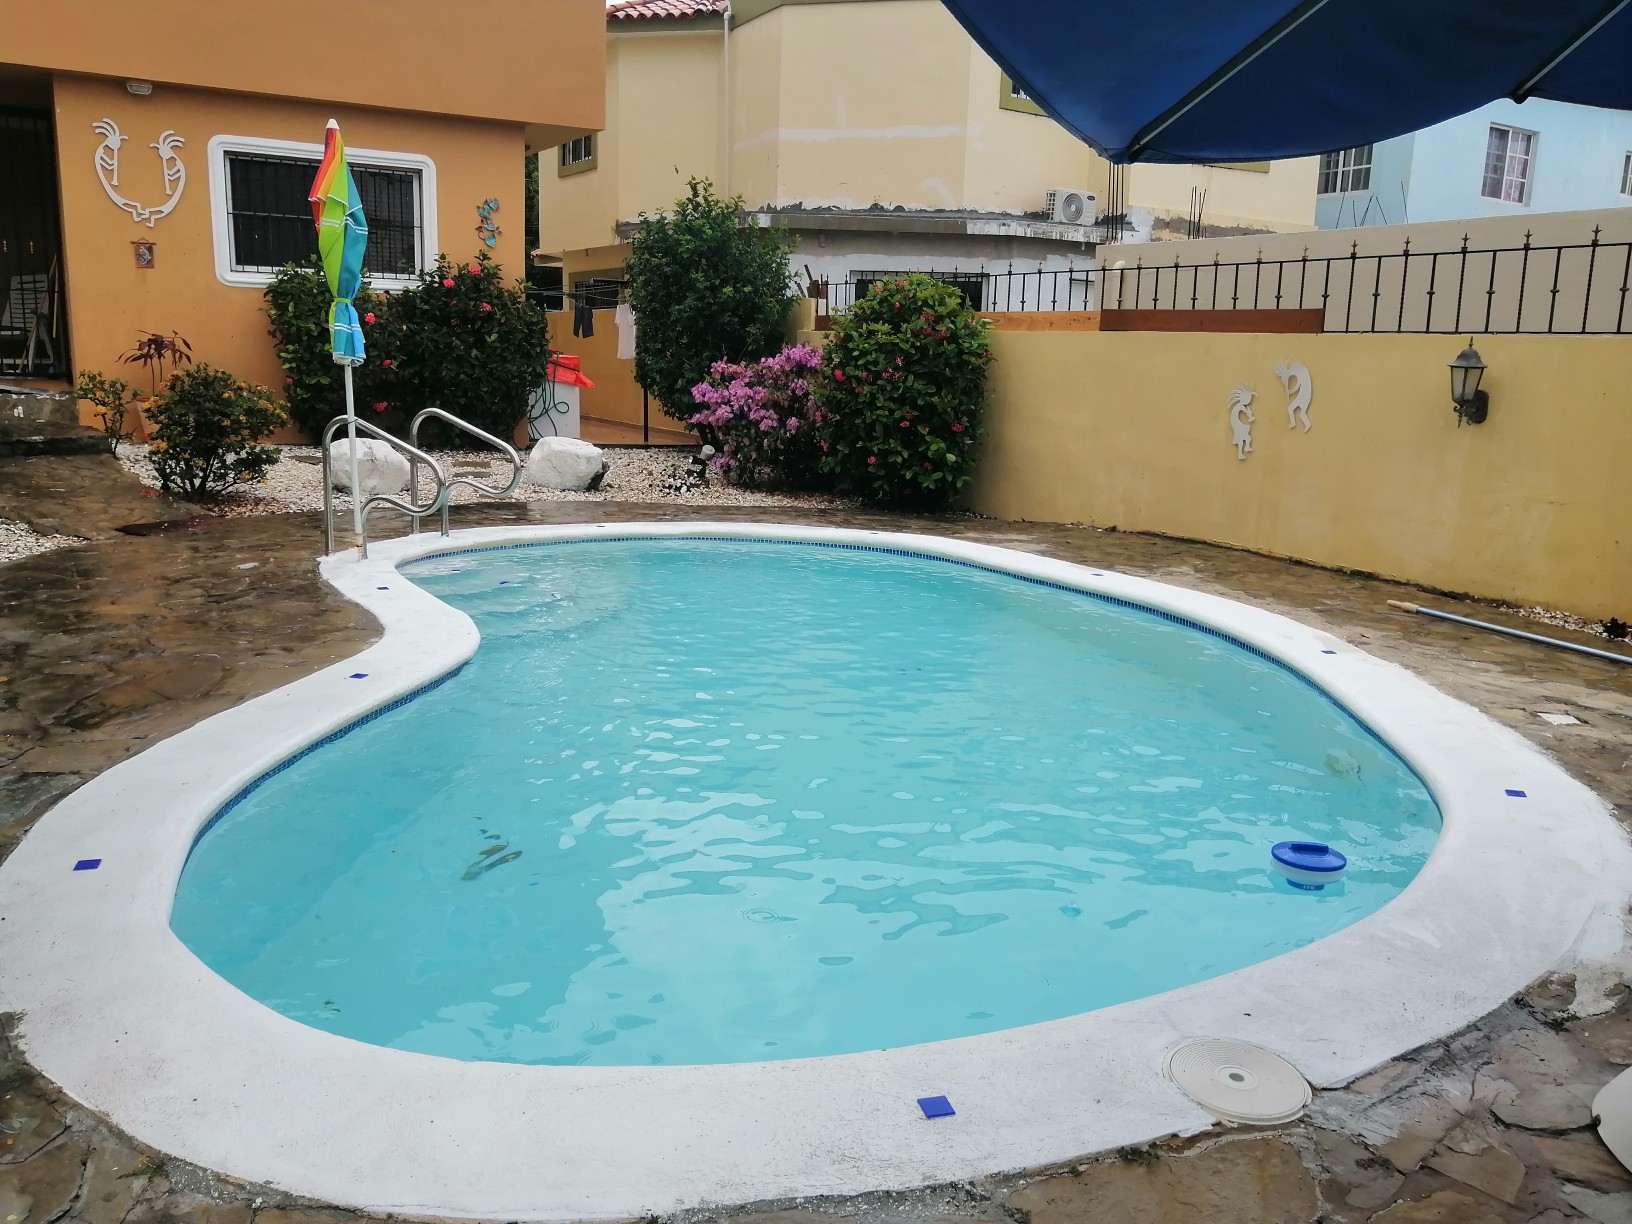 casas - Casa amplia amueblada con piscina en residencial tranquilo 5 minutos de la playa